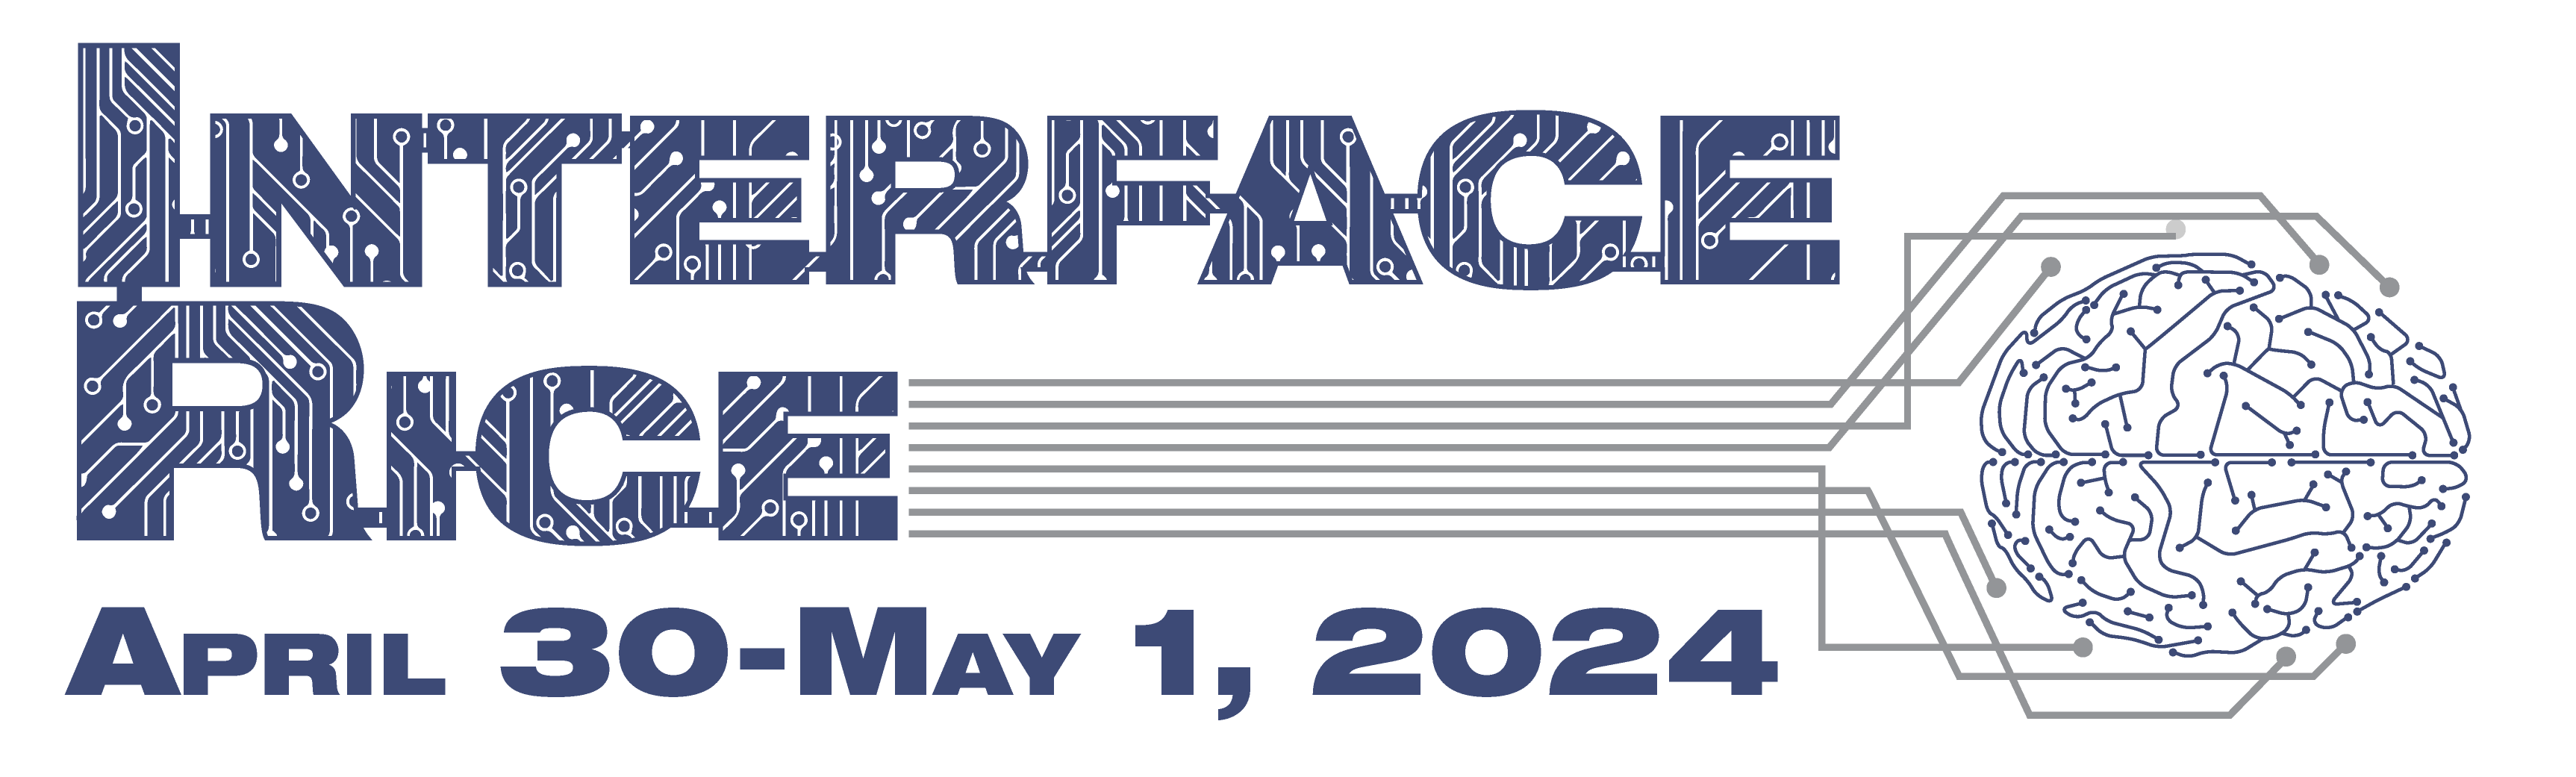 InterfaceRice April 30-May 1, 2024